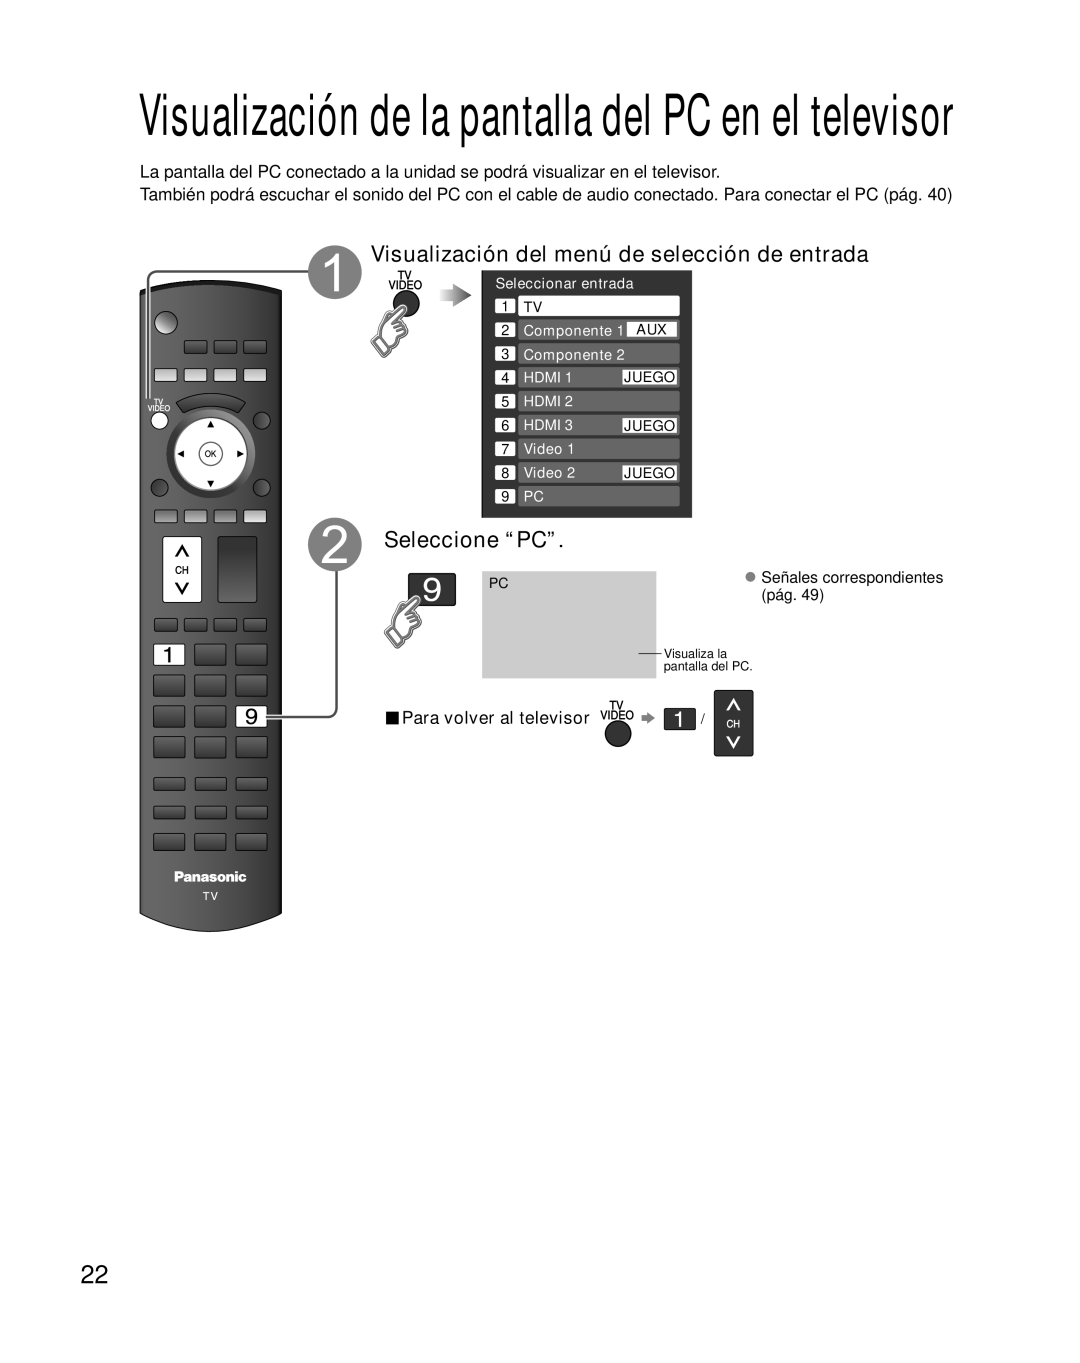 Panasonic TH-42PZ85U Seleccione “PC”, Visualización de la pantalla del PC en el televisor, Para volver al televisor 